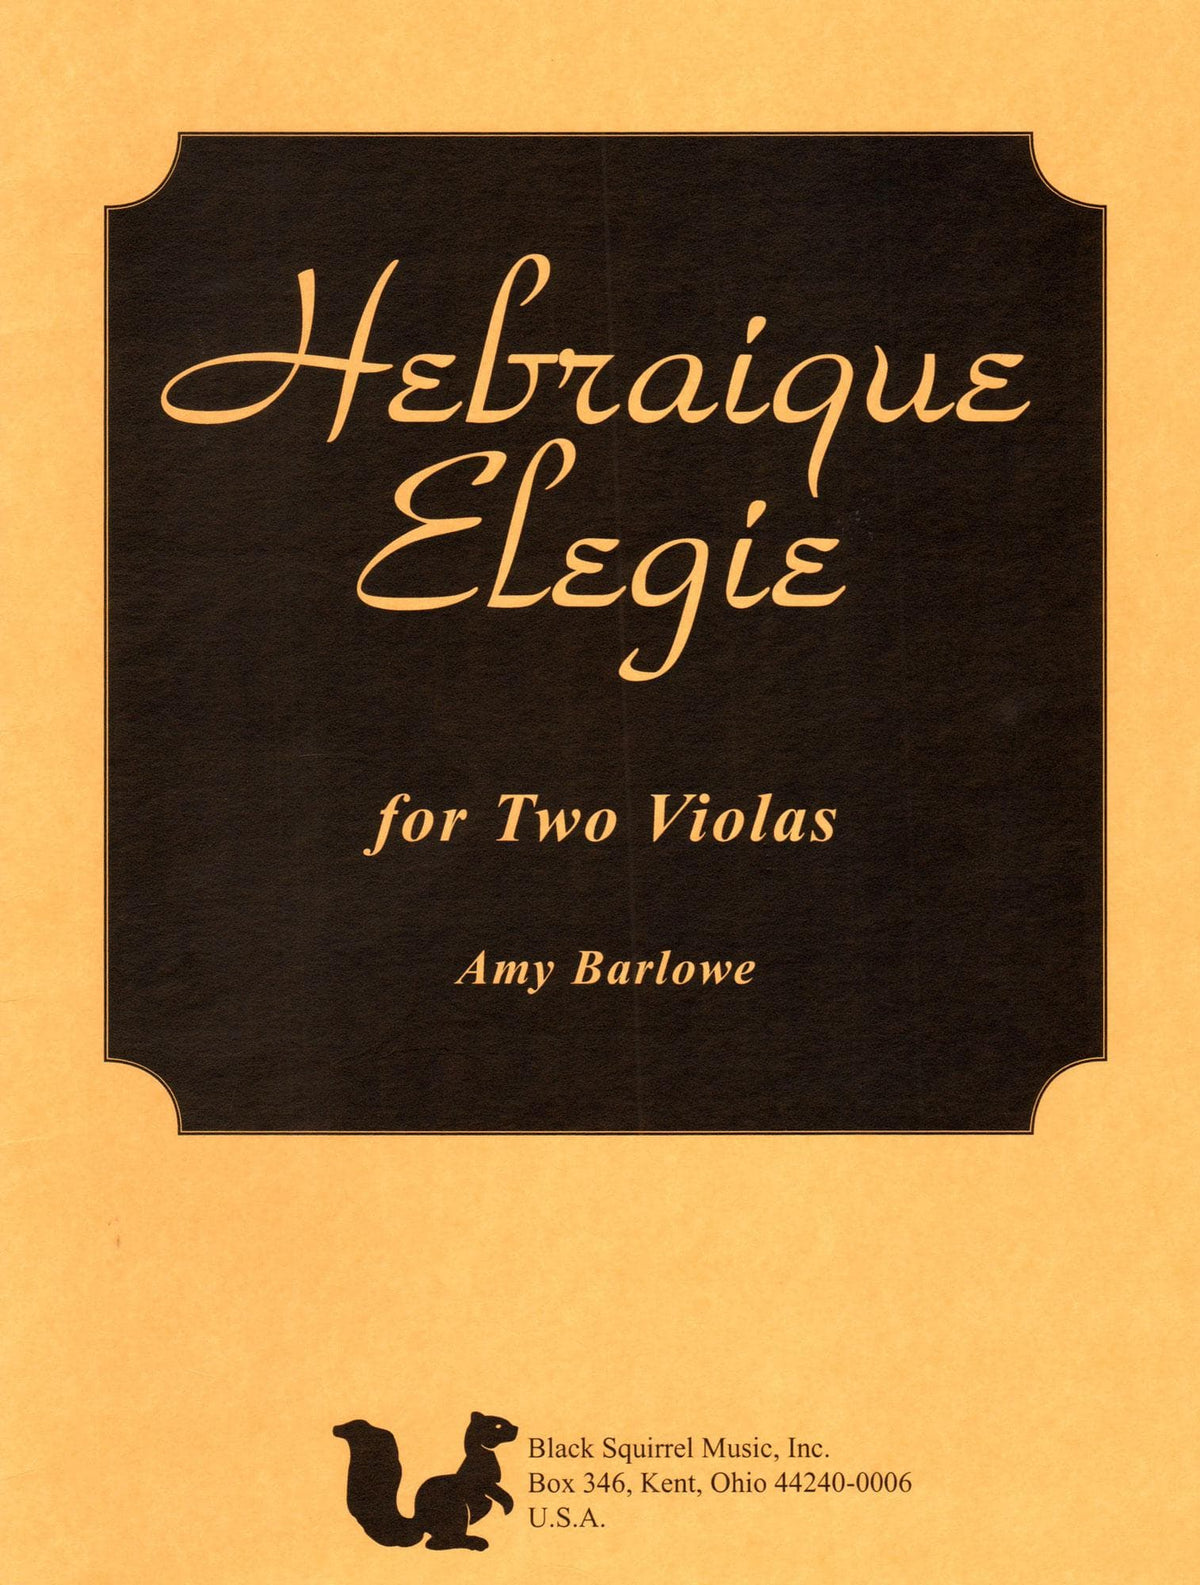 Barlowe, Amy - Hebraique Elegie for Two Violas - Black Squirrel Publication